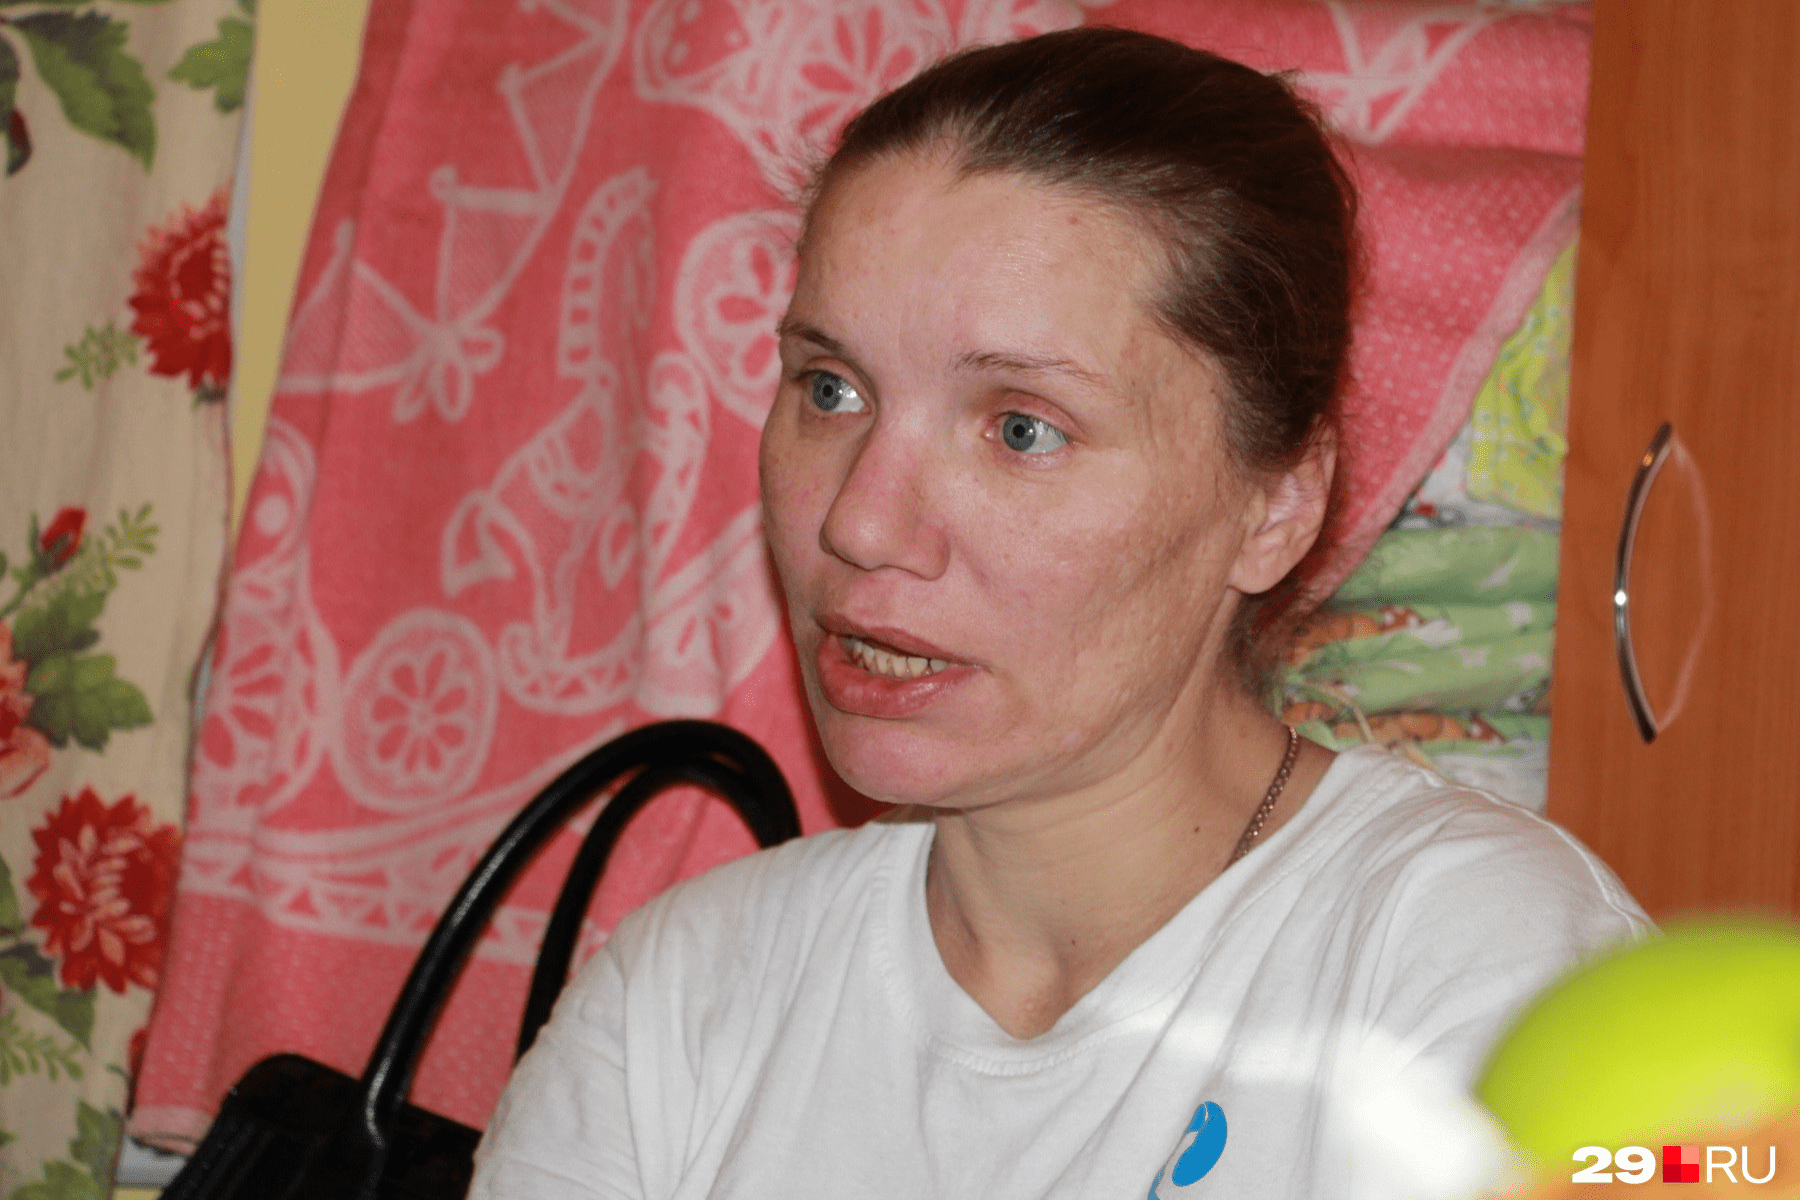 Ирина-Шахерезада строила грандиозные планы на жизнь в Архангельске, но сбежала через три месяца после рождения дочери